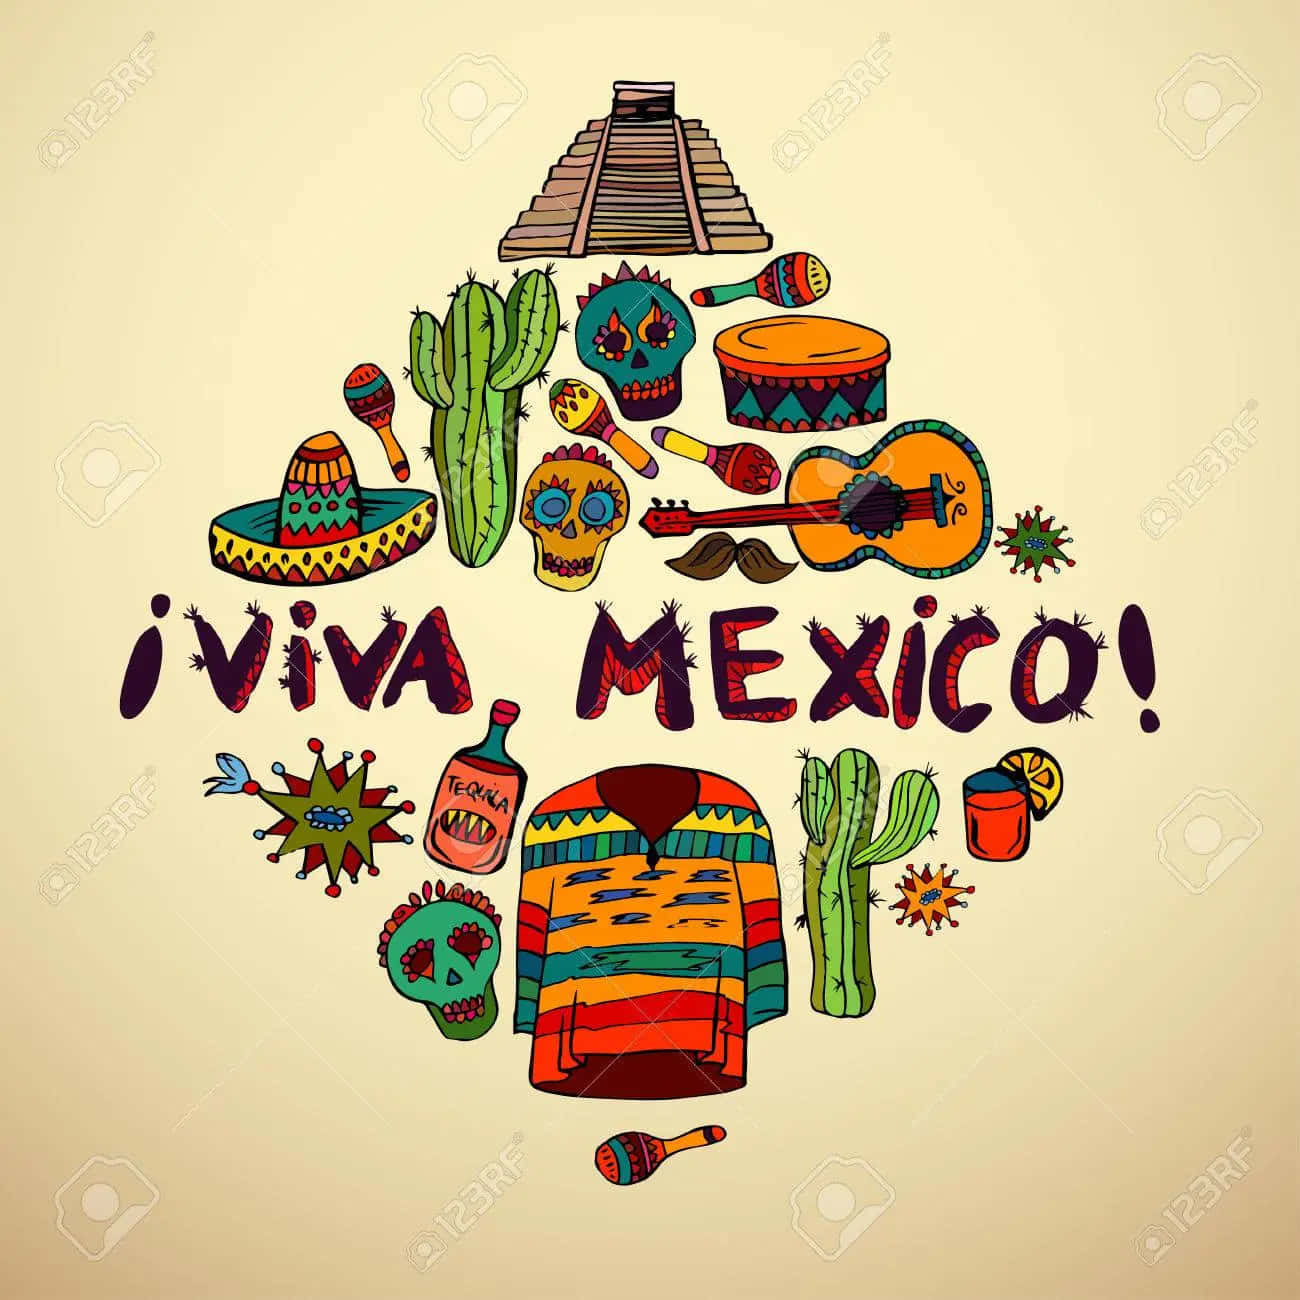 Vivamexico! Fejr Kulturen, Arven Og Ånden Fra Denne Smukke Nation. Wallpaper